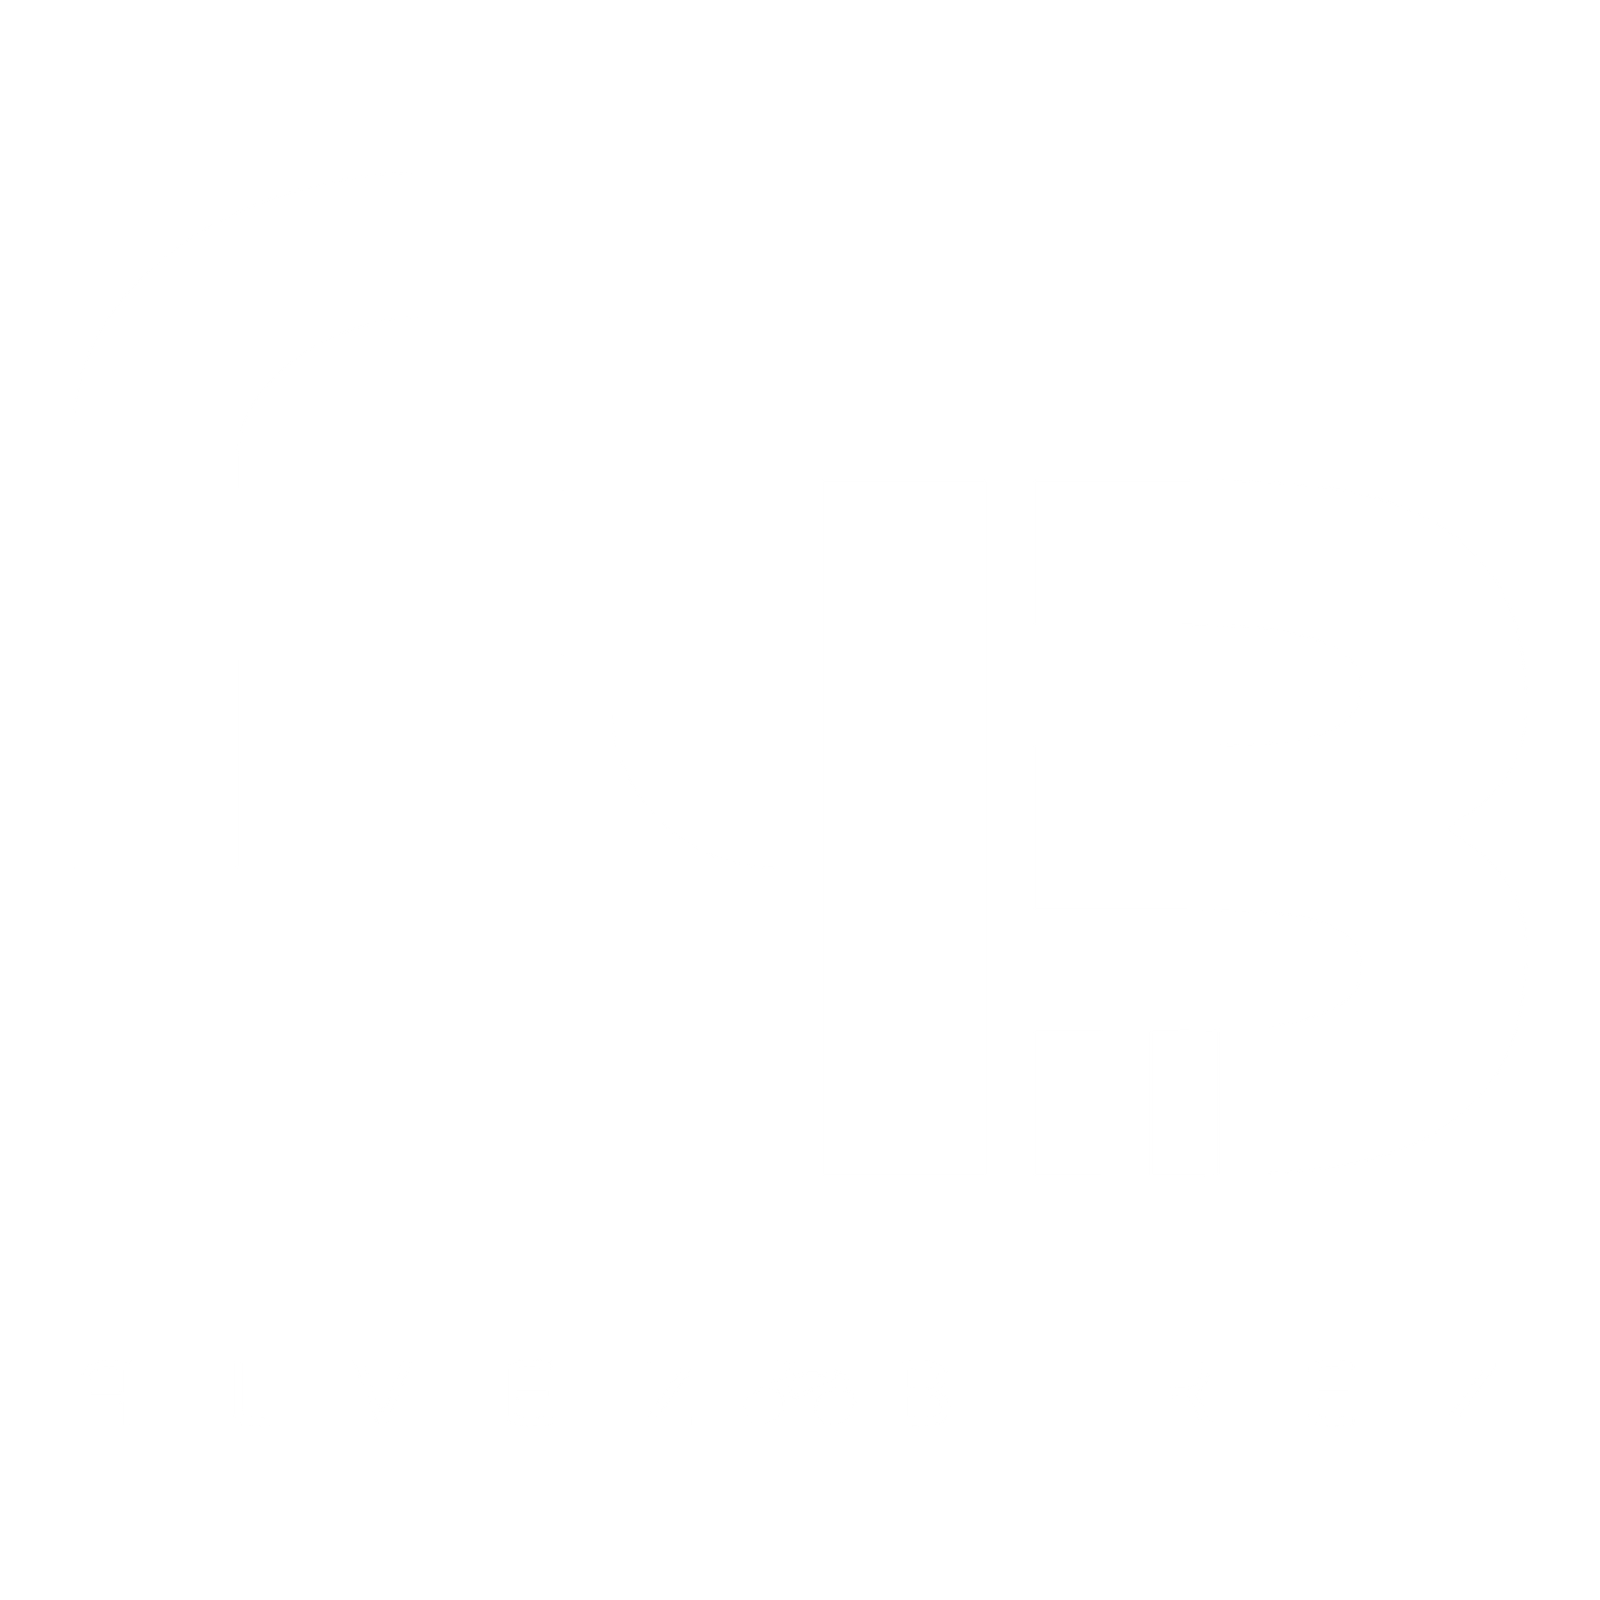 Alvez BIkez Logo, a capital A and capital B.